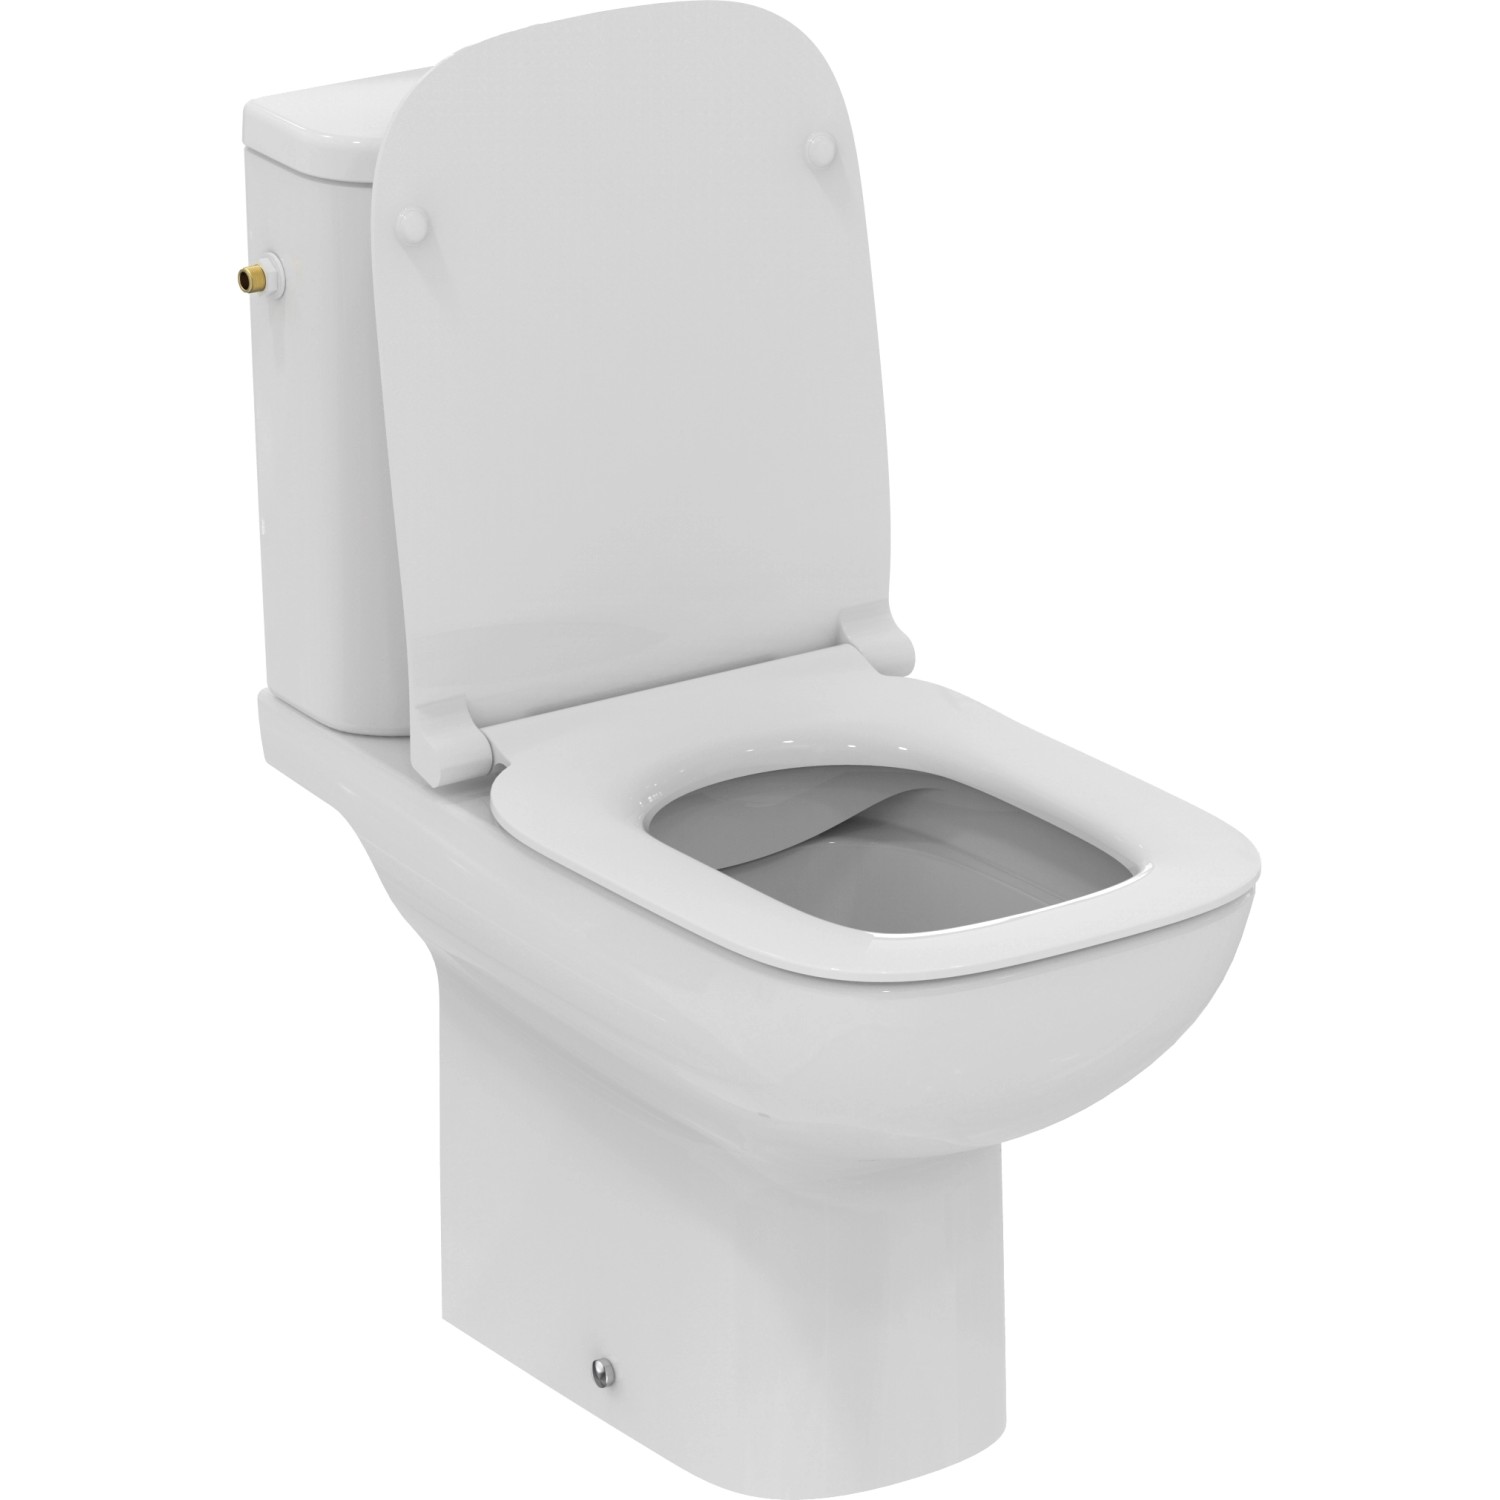 Ideal Standard WC-Paket i.life A ohne Spülrand, mit WC-Sitz Weiß von Ideal Standard